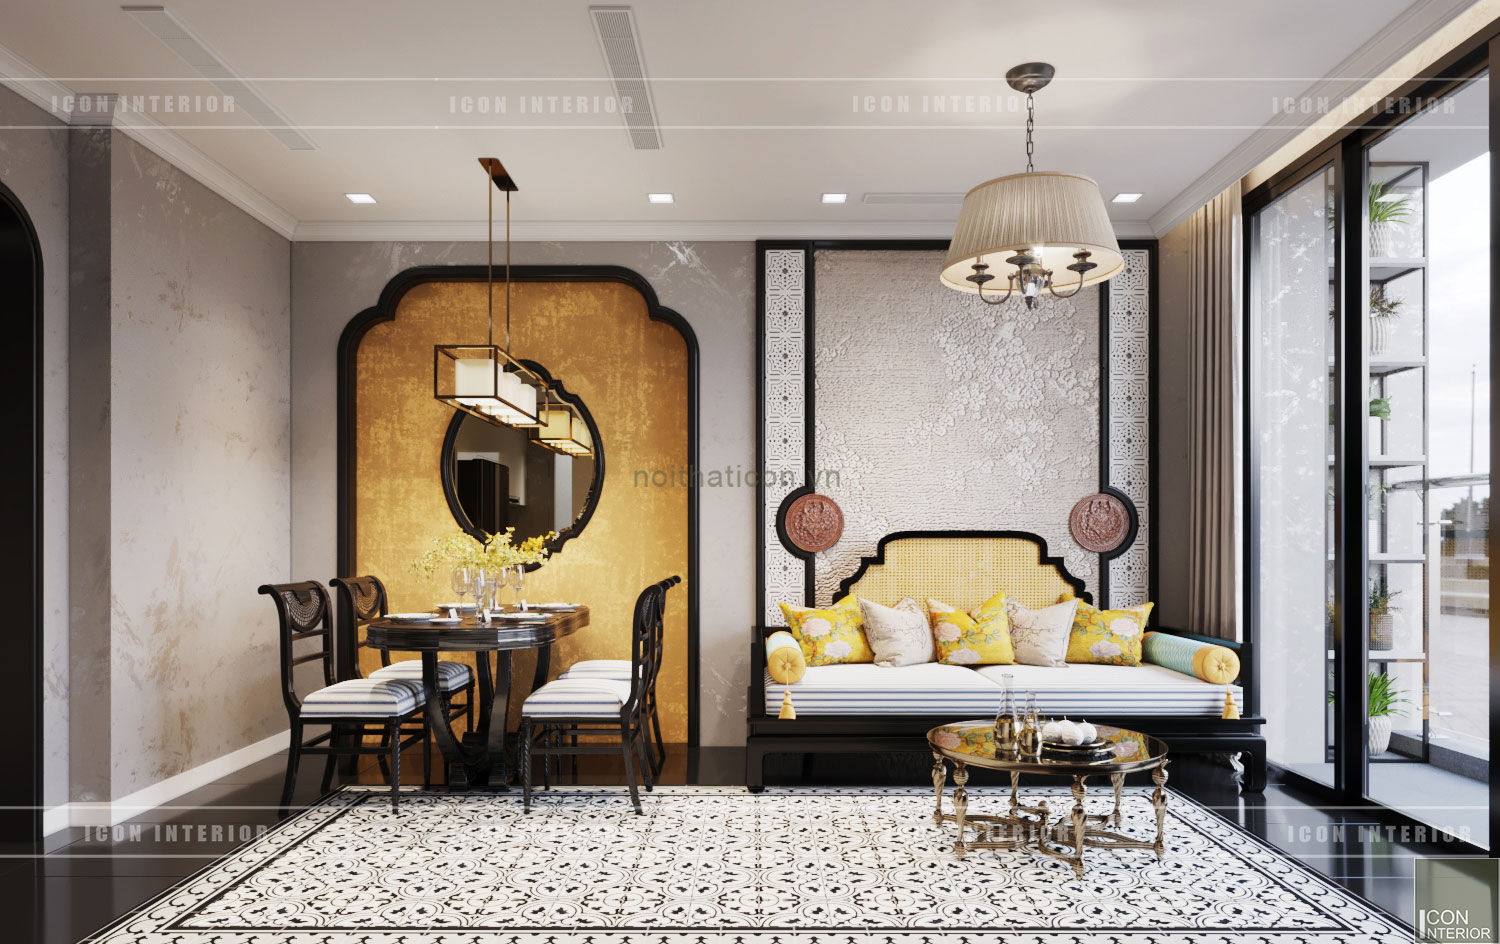 XU HƯỚNG ĐÔNG DƯƠNG ẤN TƯỢNG - Thiết kế căn hộ Vinhomes Golden River, ICON INTERIOR ICON INTERIOR Asian style living room